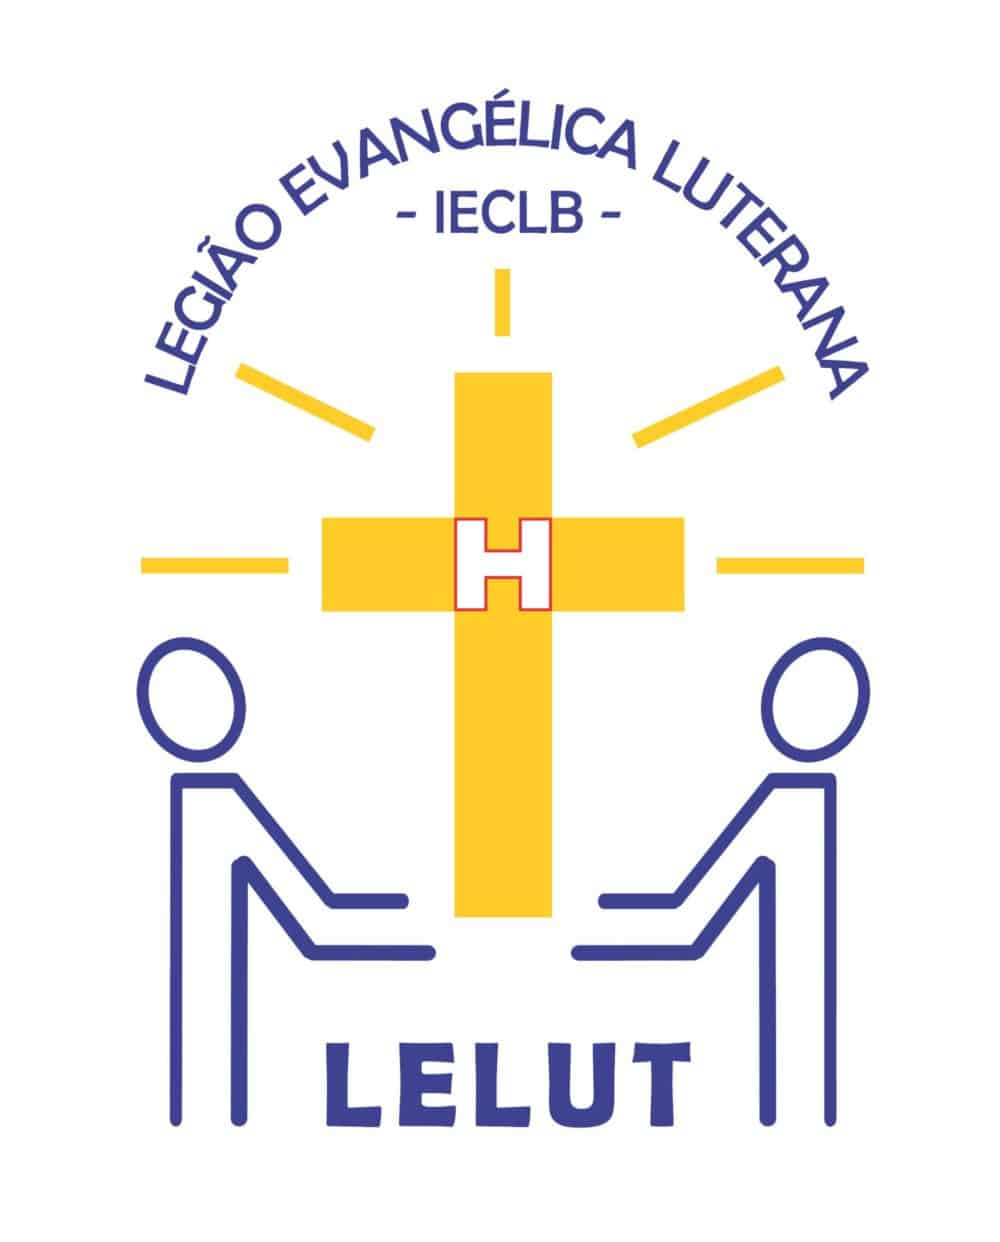 Logotipo da LELUT - Legião Evangélica Luterana